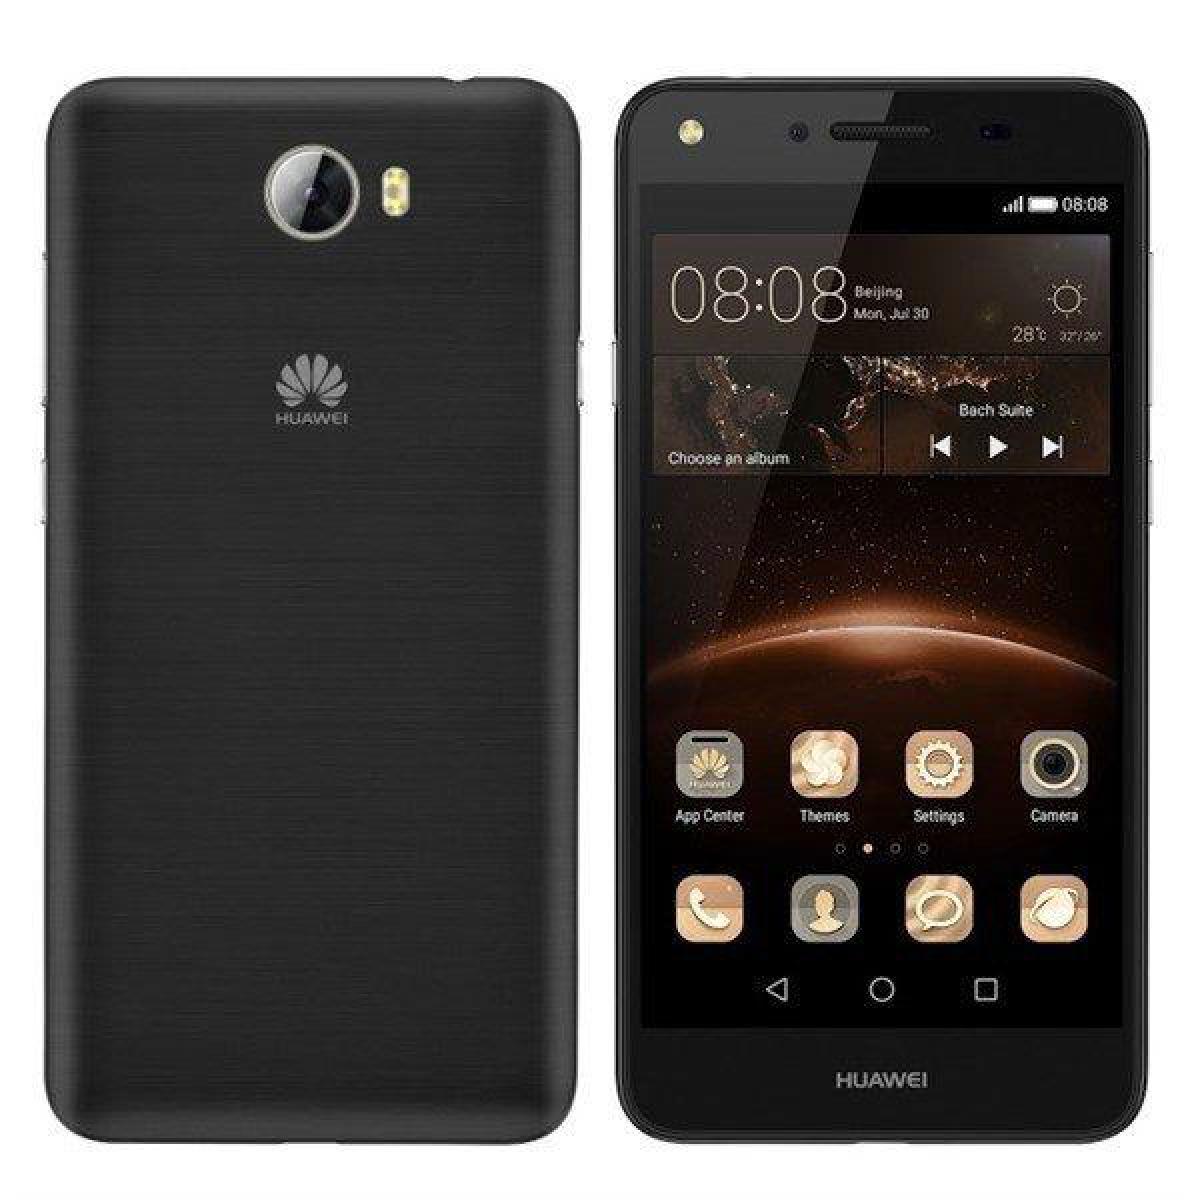 Huawei - Huawei Y5 II 8 Go Noir - débloqué tout opérateur - Smartphone Android